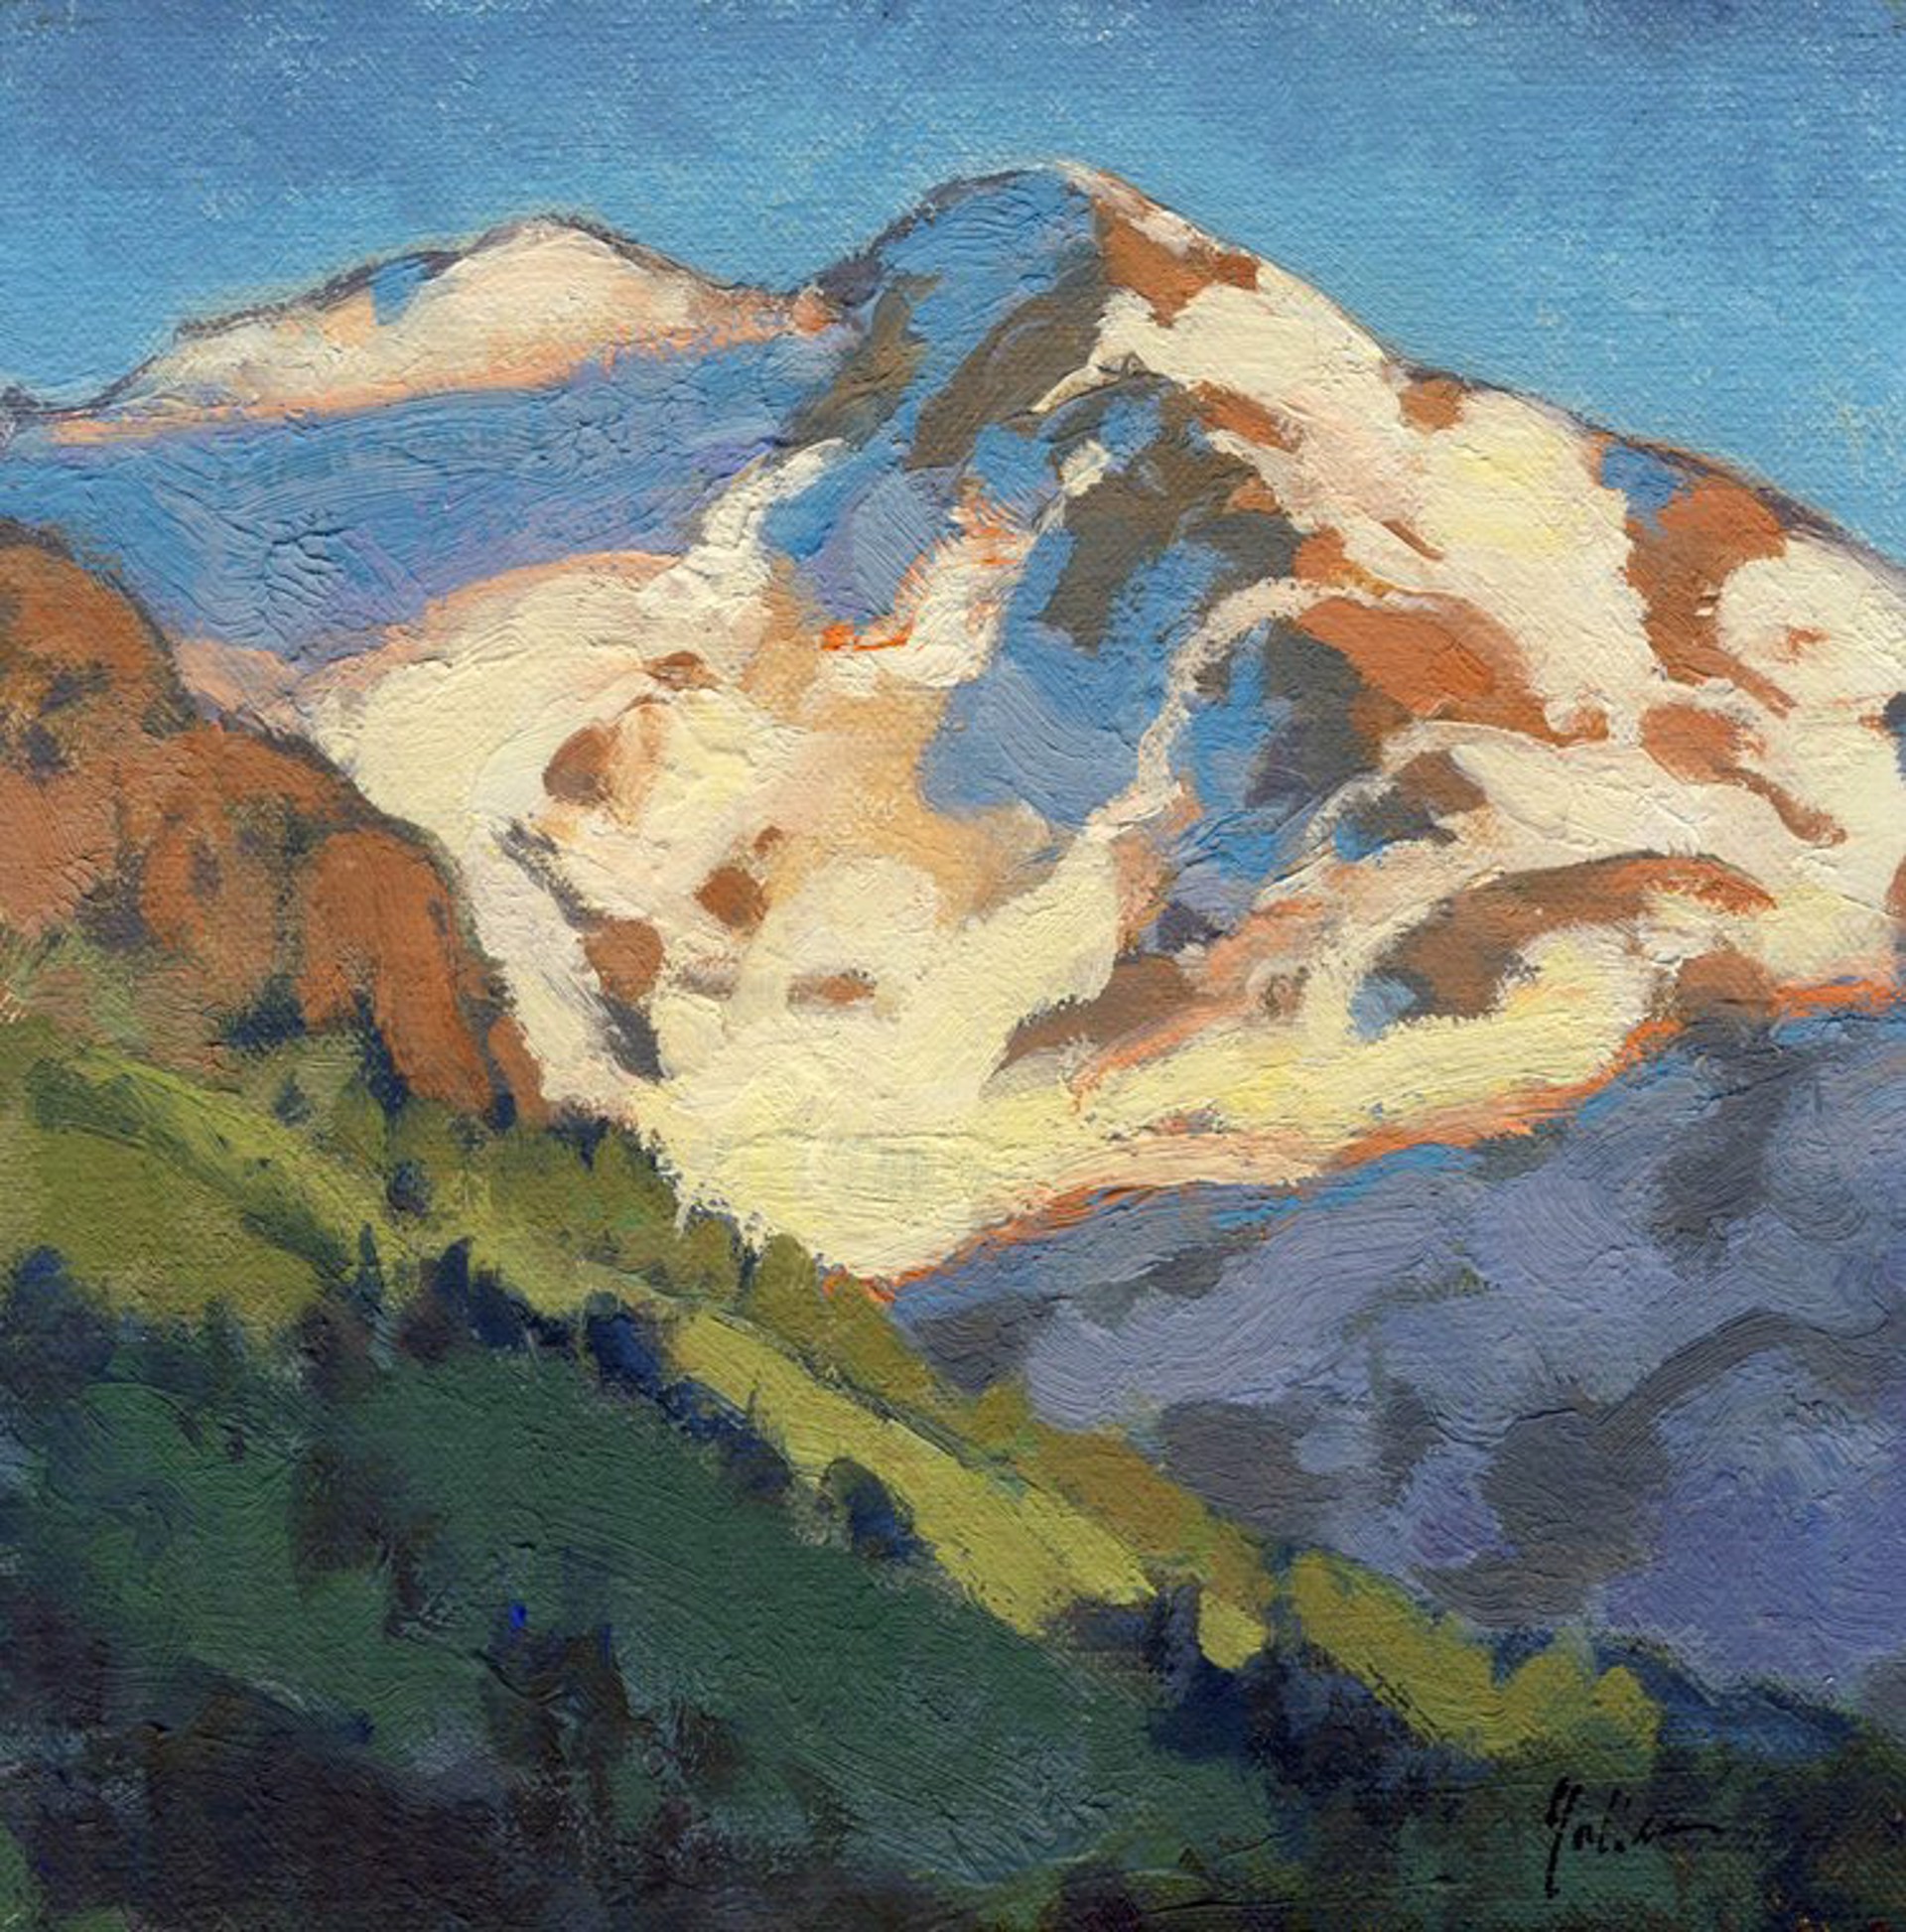 Alpine Patterns by Bill Gallen